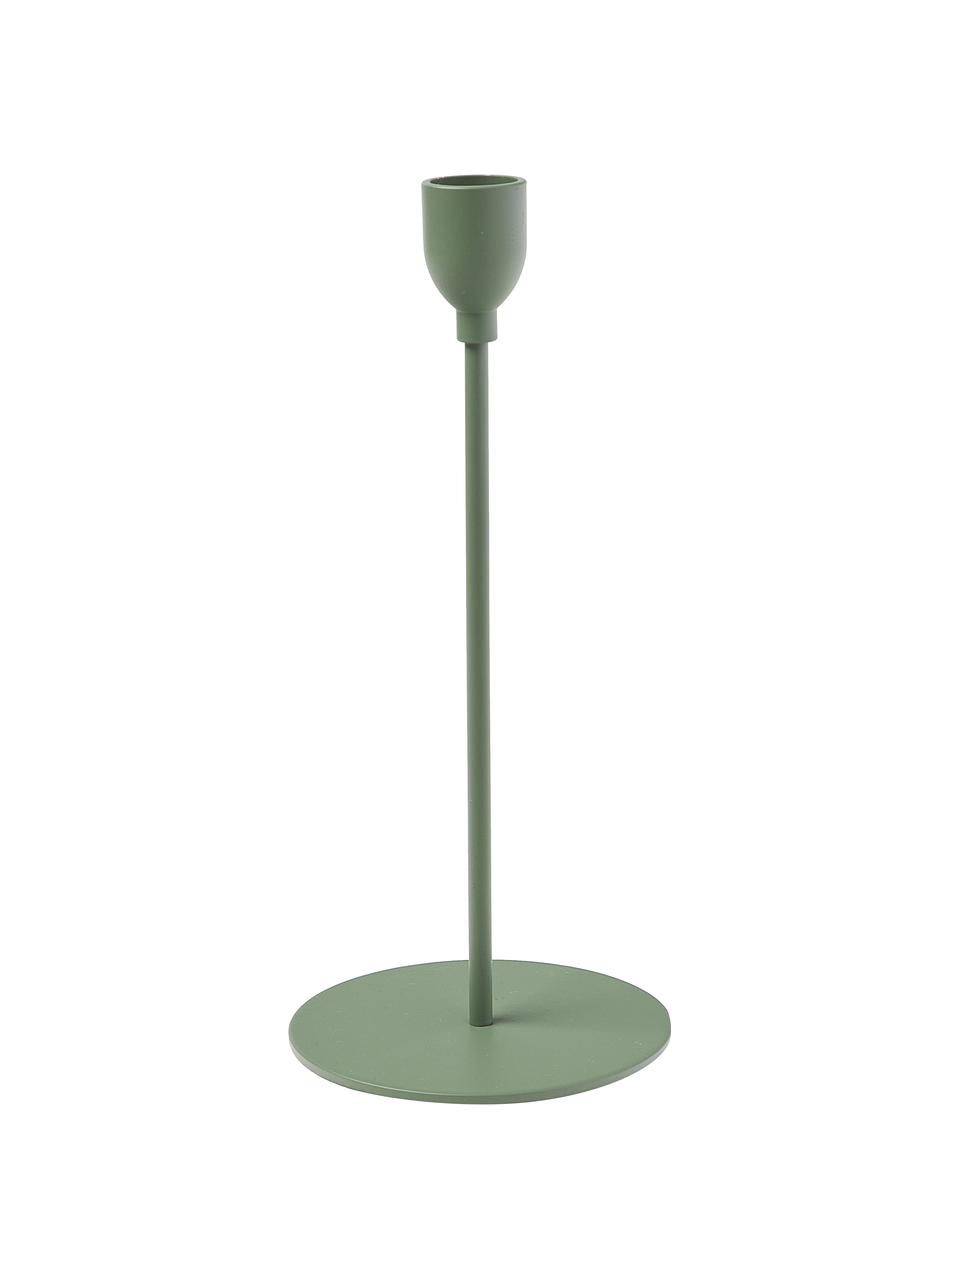 Kerzenhalter-Set Malte in Grün, 3-tlg., Metall, beschichtet, Grün, Set mit verschiedenen Größen